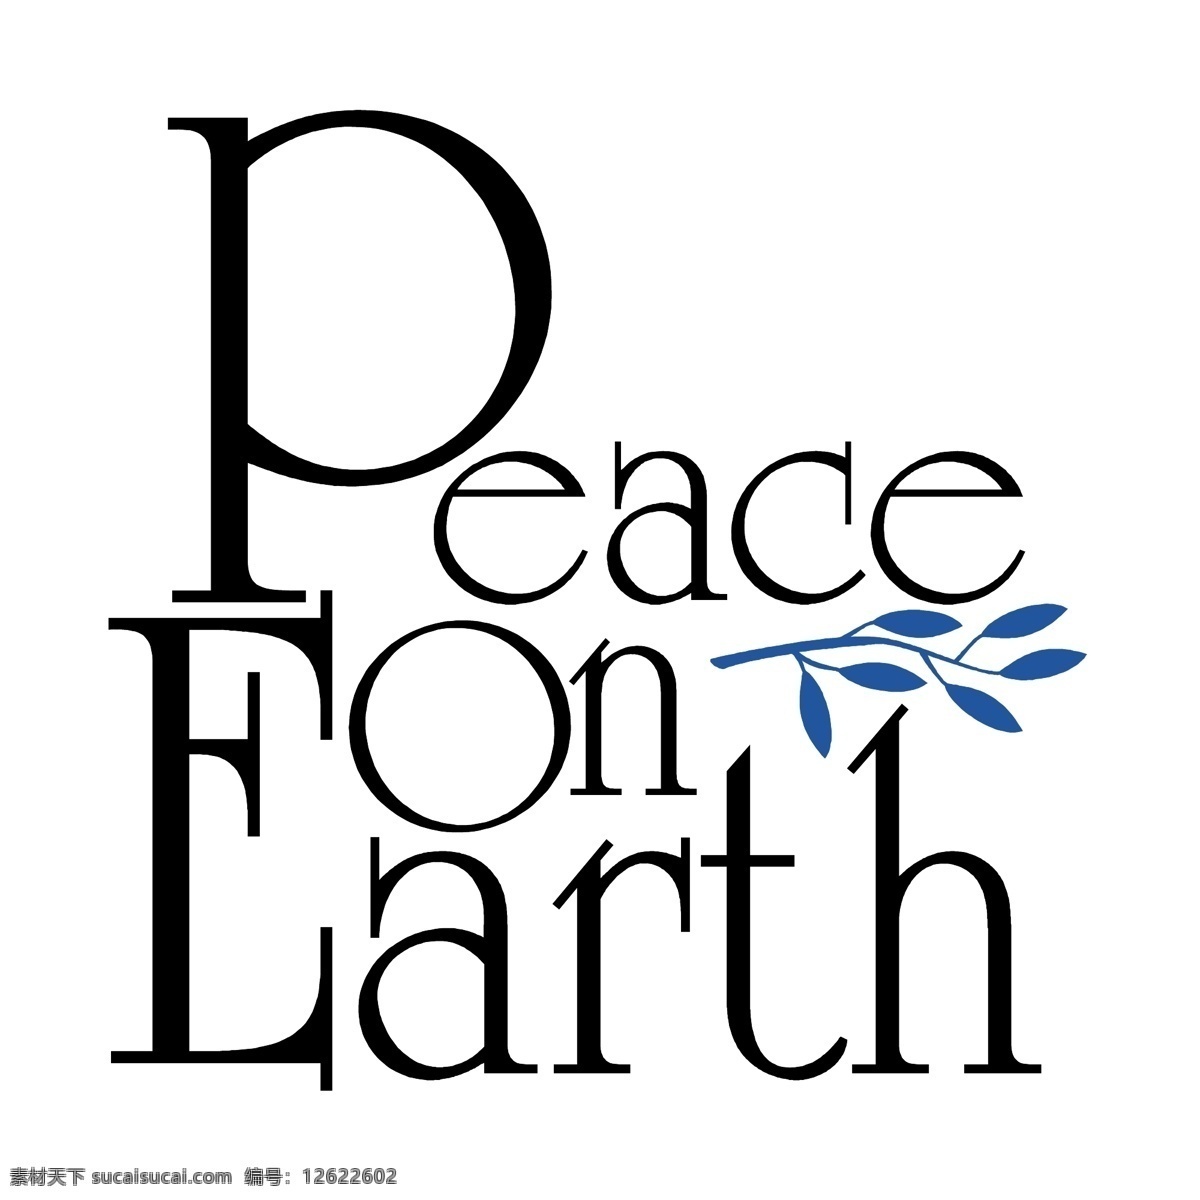 地球 上 和平 标志 免费 白色